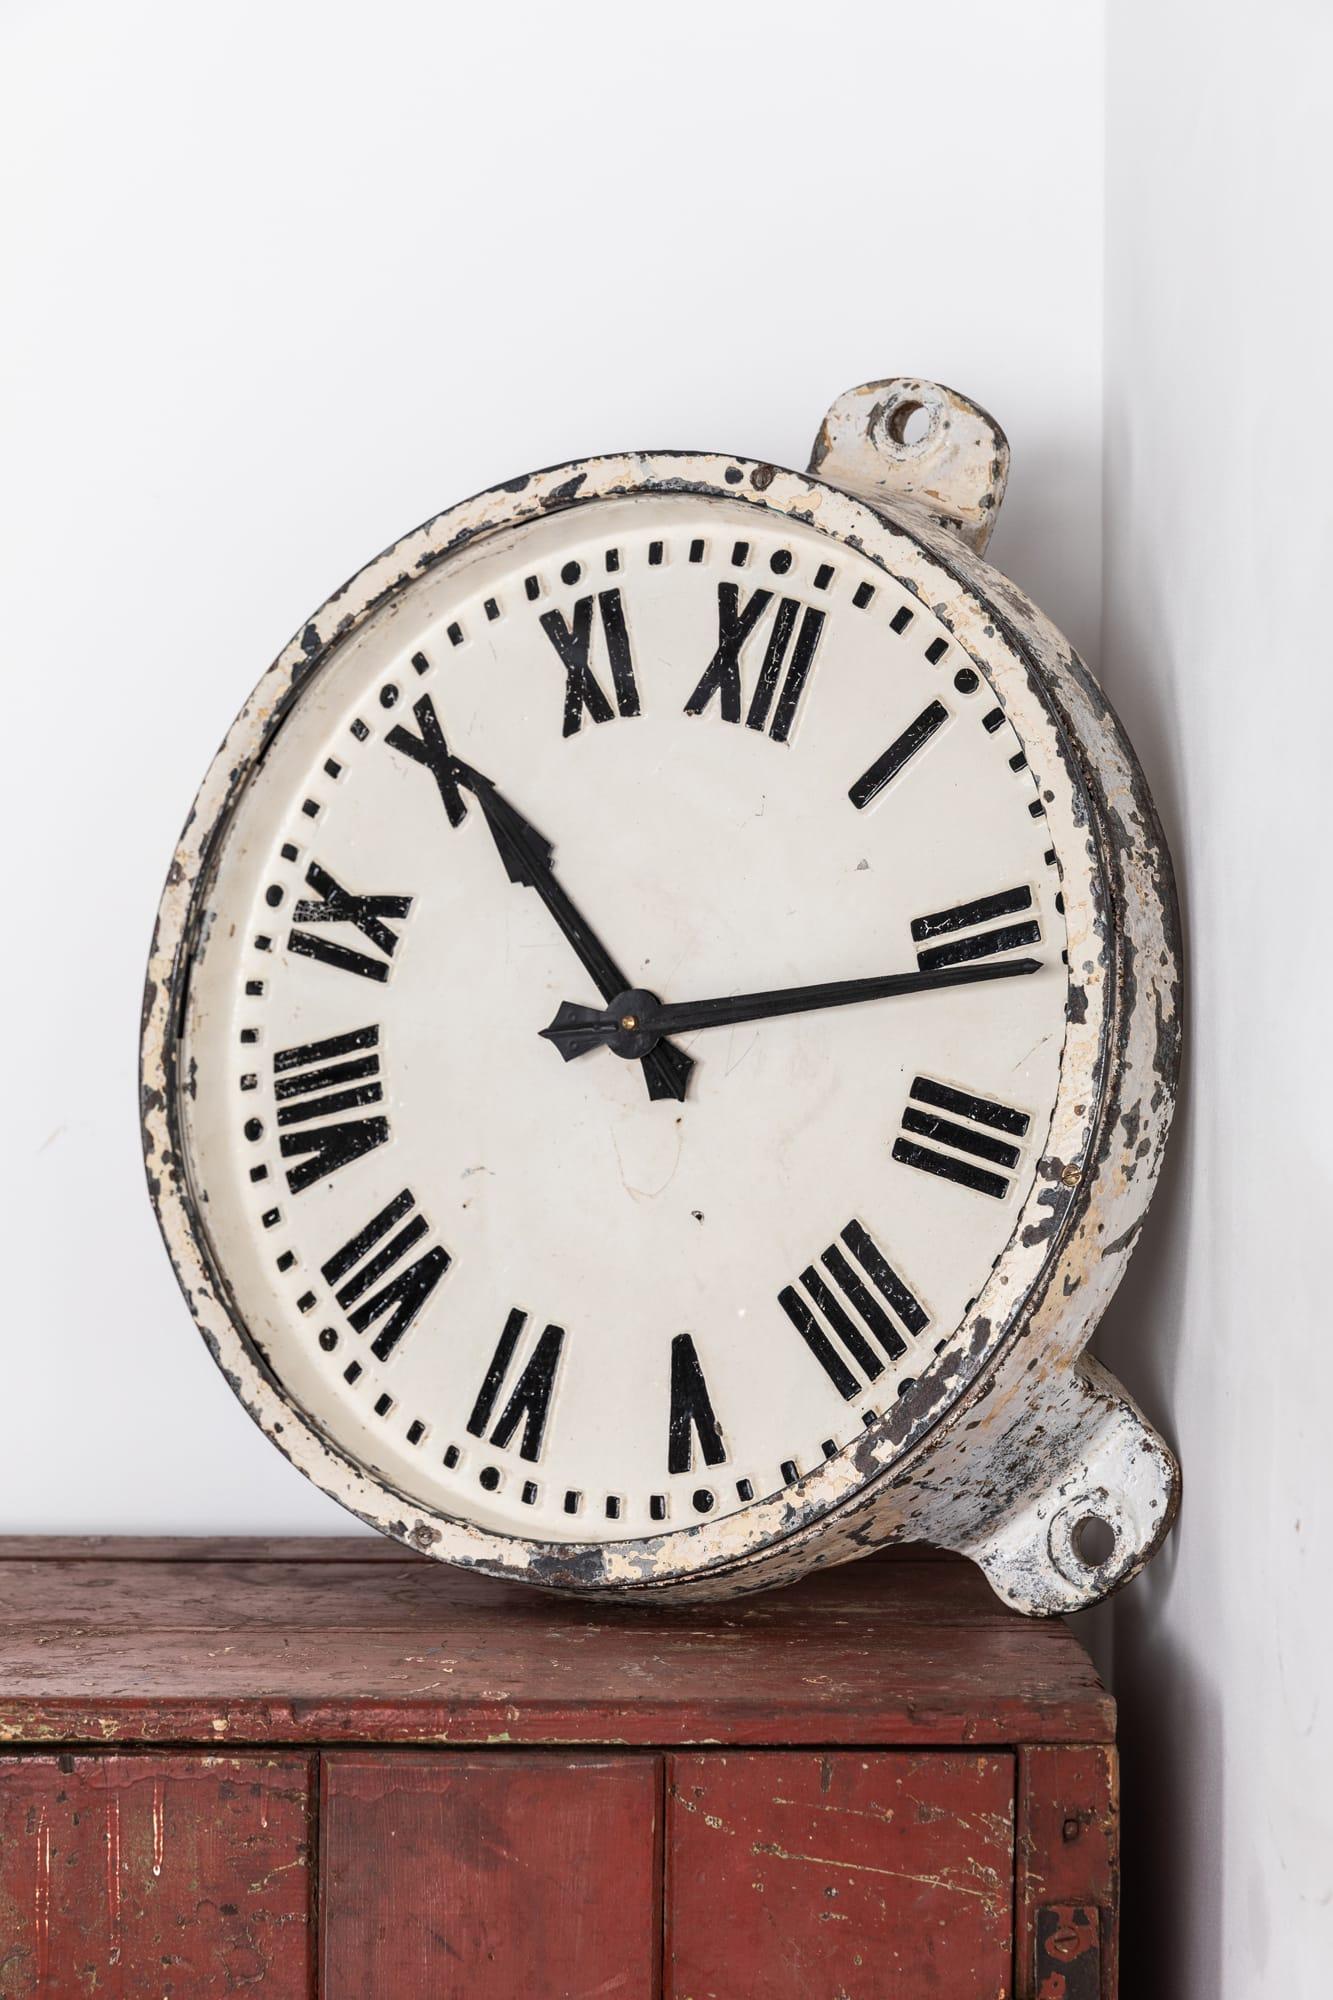 

Große Fabrikuhr aus Gusseisen, hergestellt von der bekannten Elektrofirma Gents of Leicester. ca. 1930

Diese Uhr, die mit ziemlicher Sicherheit in einem industriellen Umfeld verwendet wurde, weist noch Reste der alten weißen Farbe auf. Sauberes,